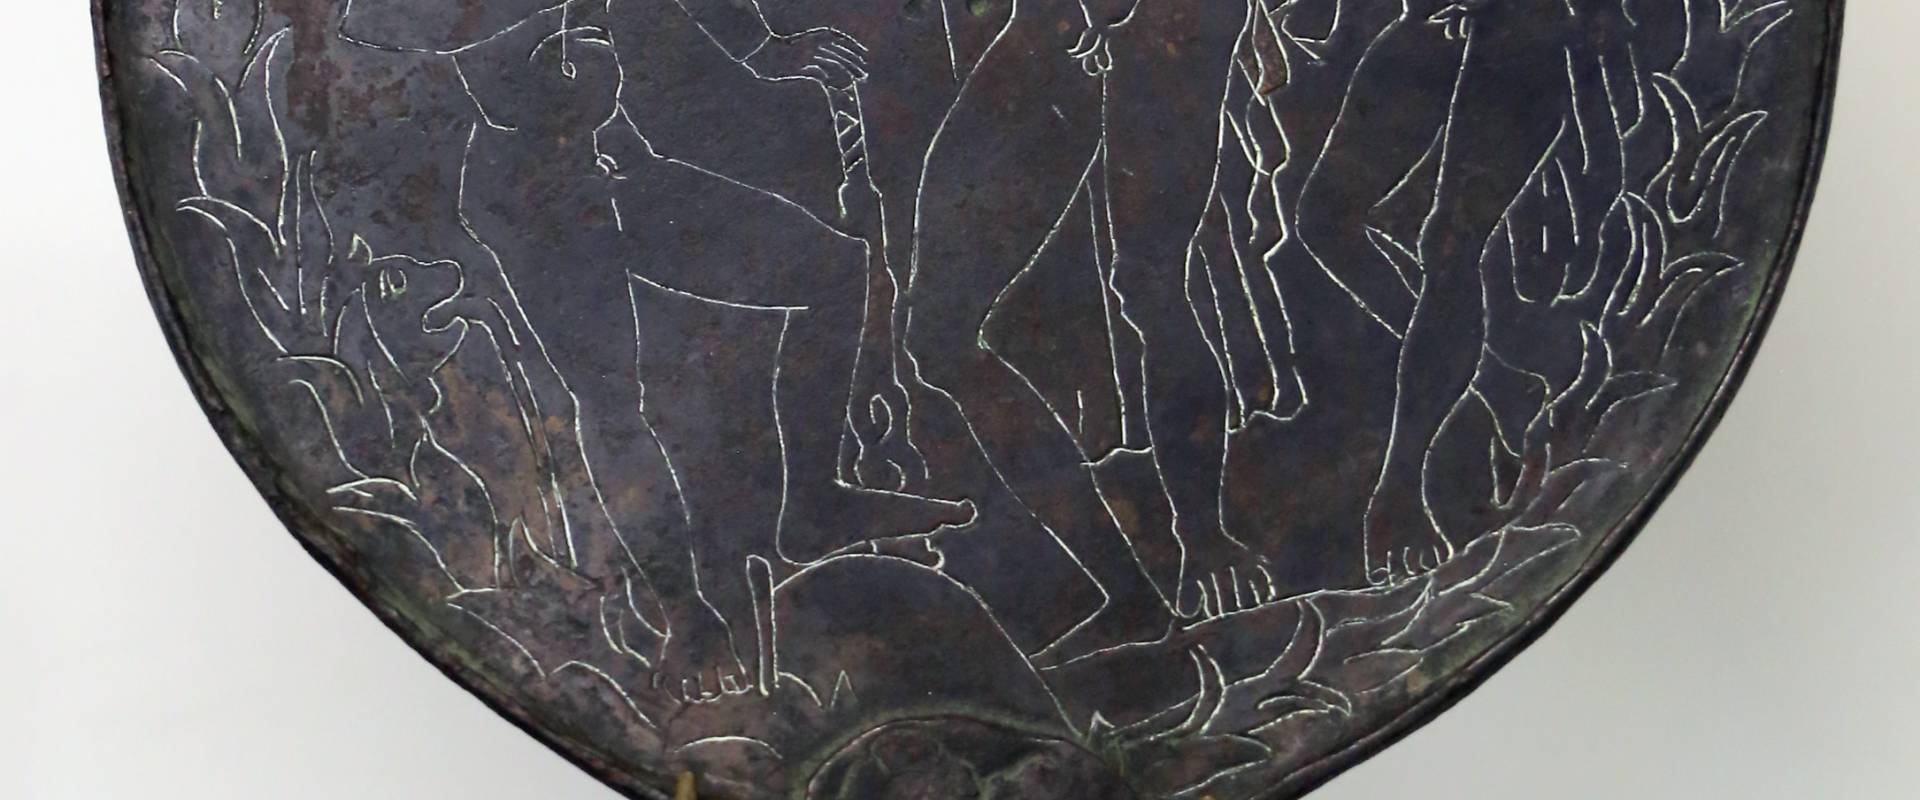 Etruria, specchio con incisioni mitologiche e manico configurato, III-II secolo ac. 03 foto di Sailko